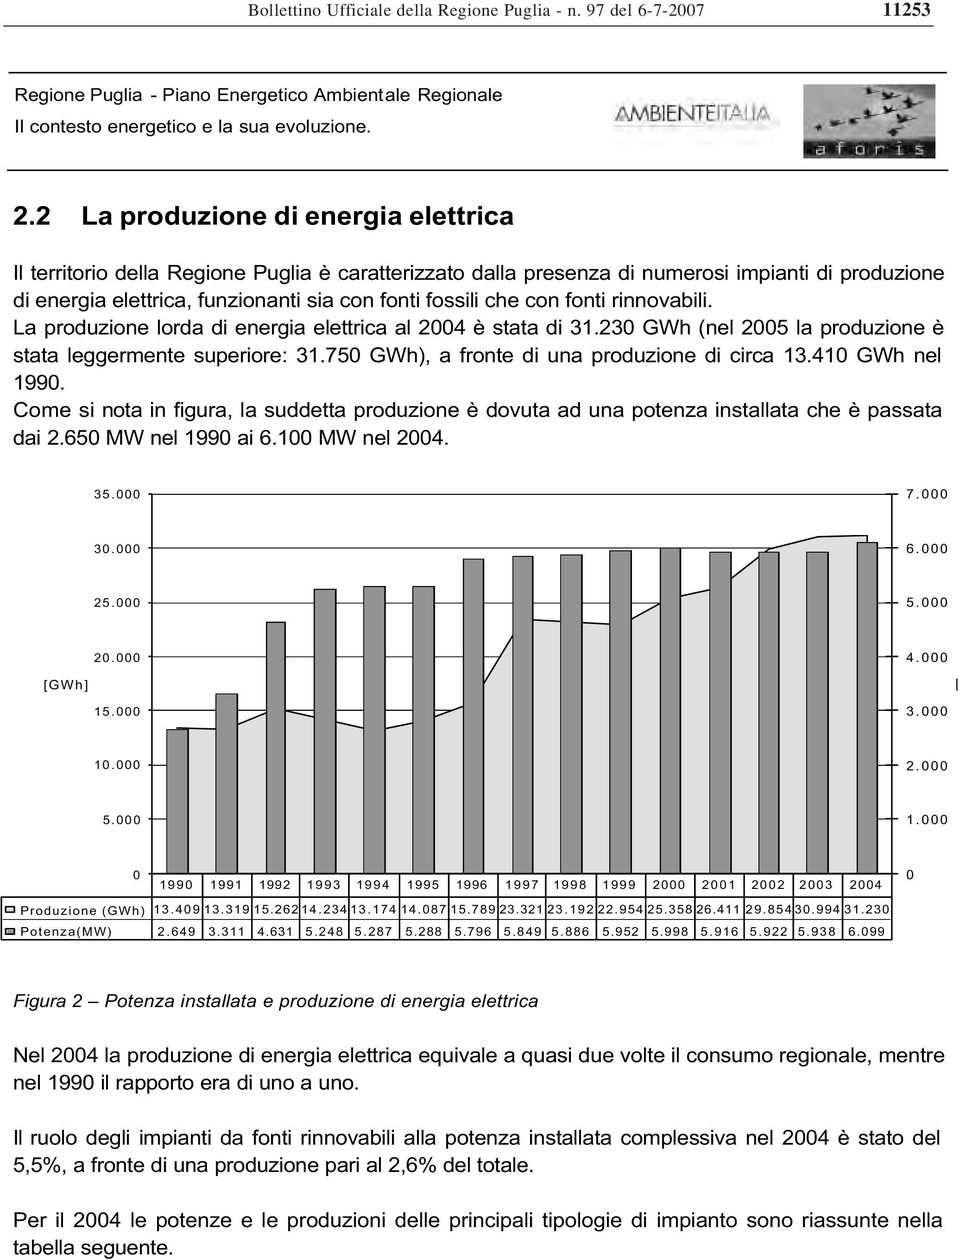 con fonti rinnovabili. La produzione lorda di energia elettrica al 2004 è stata di 31.230 GWh (nel 2005 la produzione è stata leggermente superiore: 31.